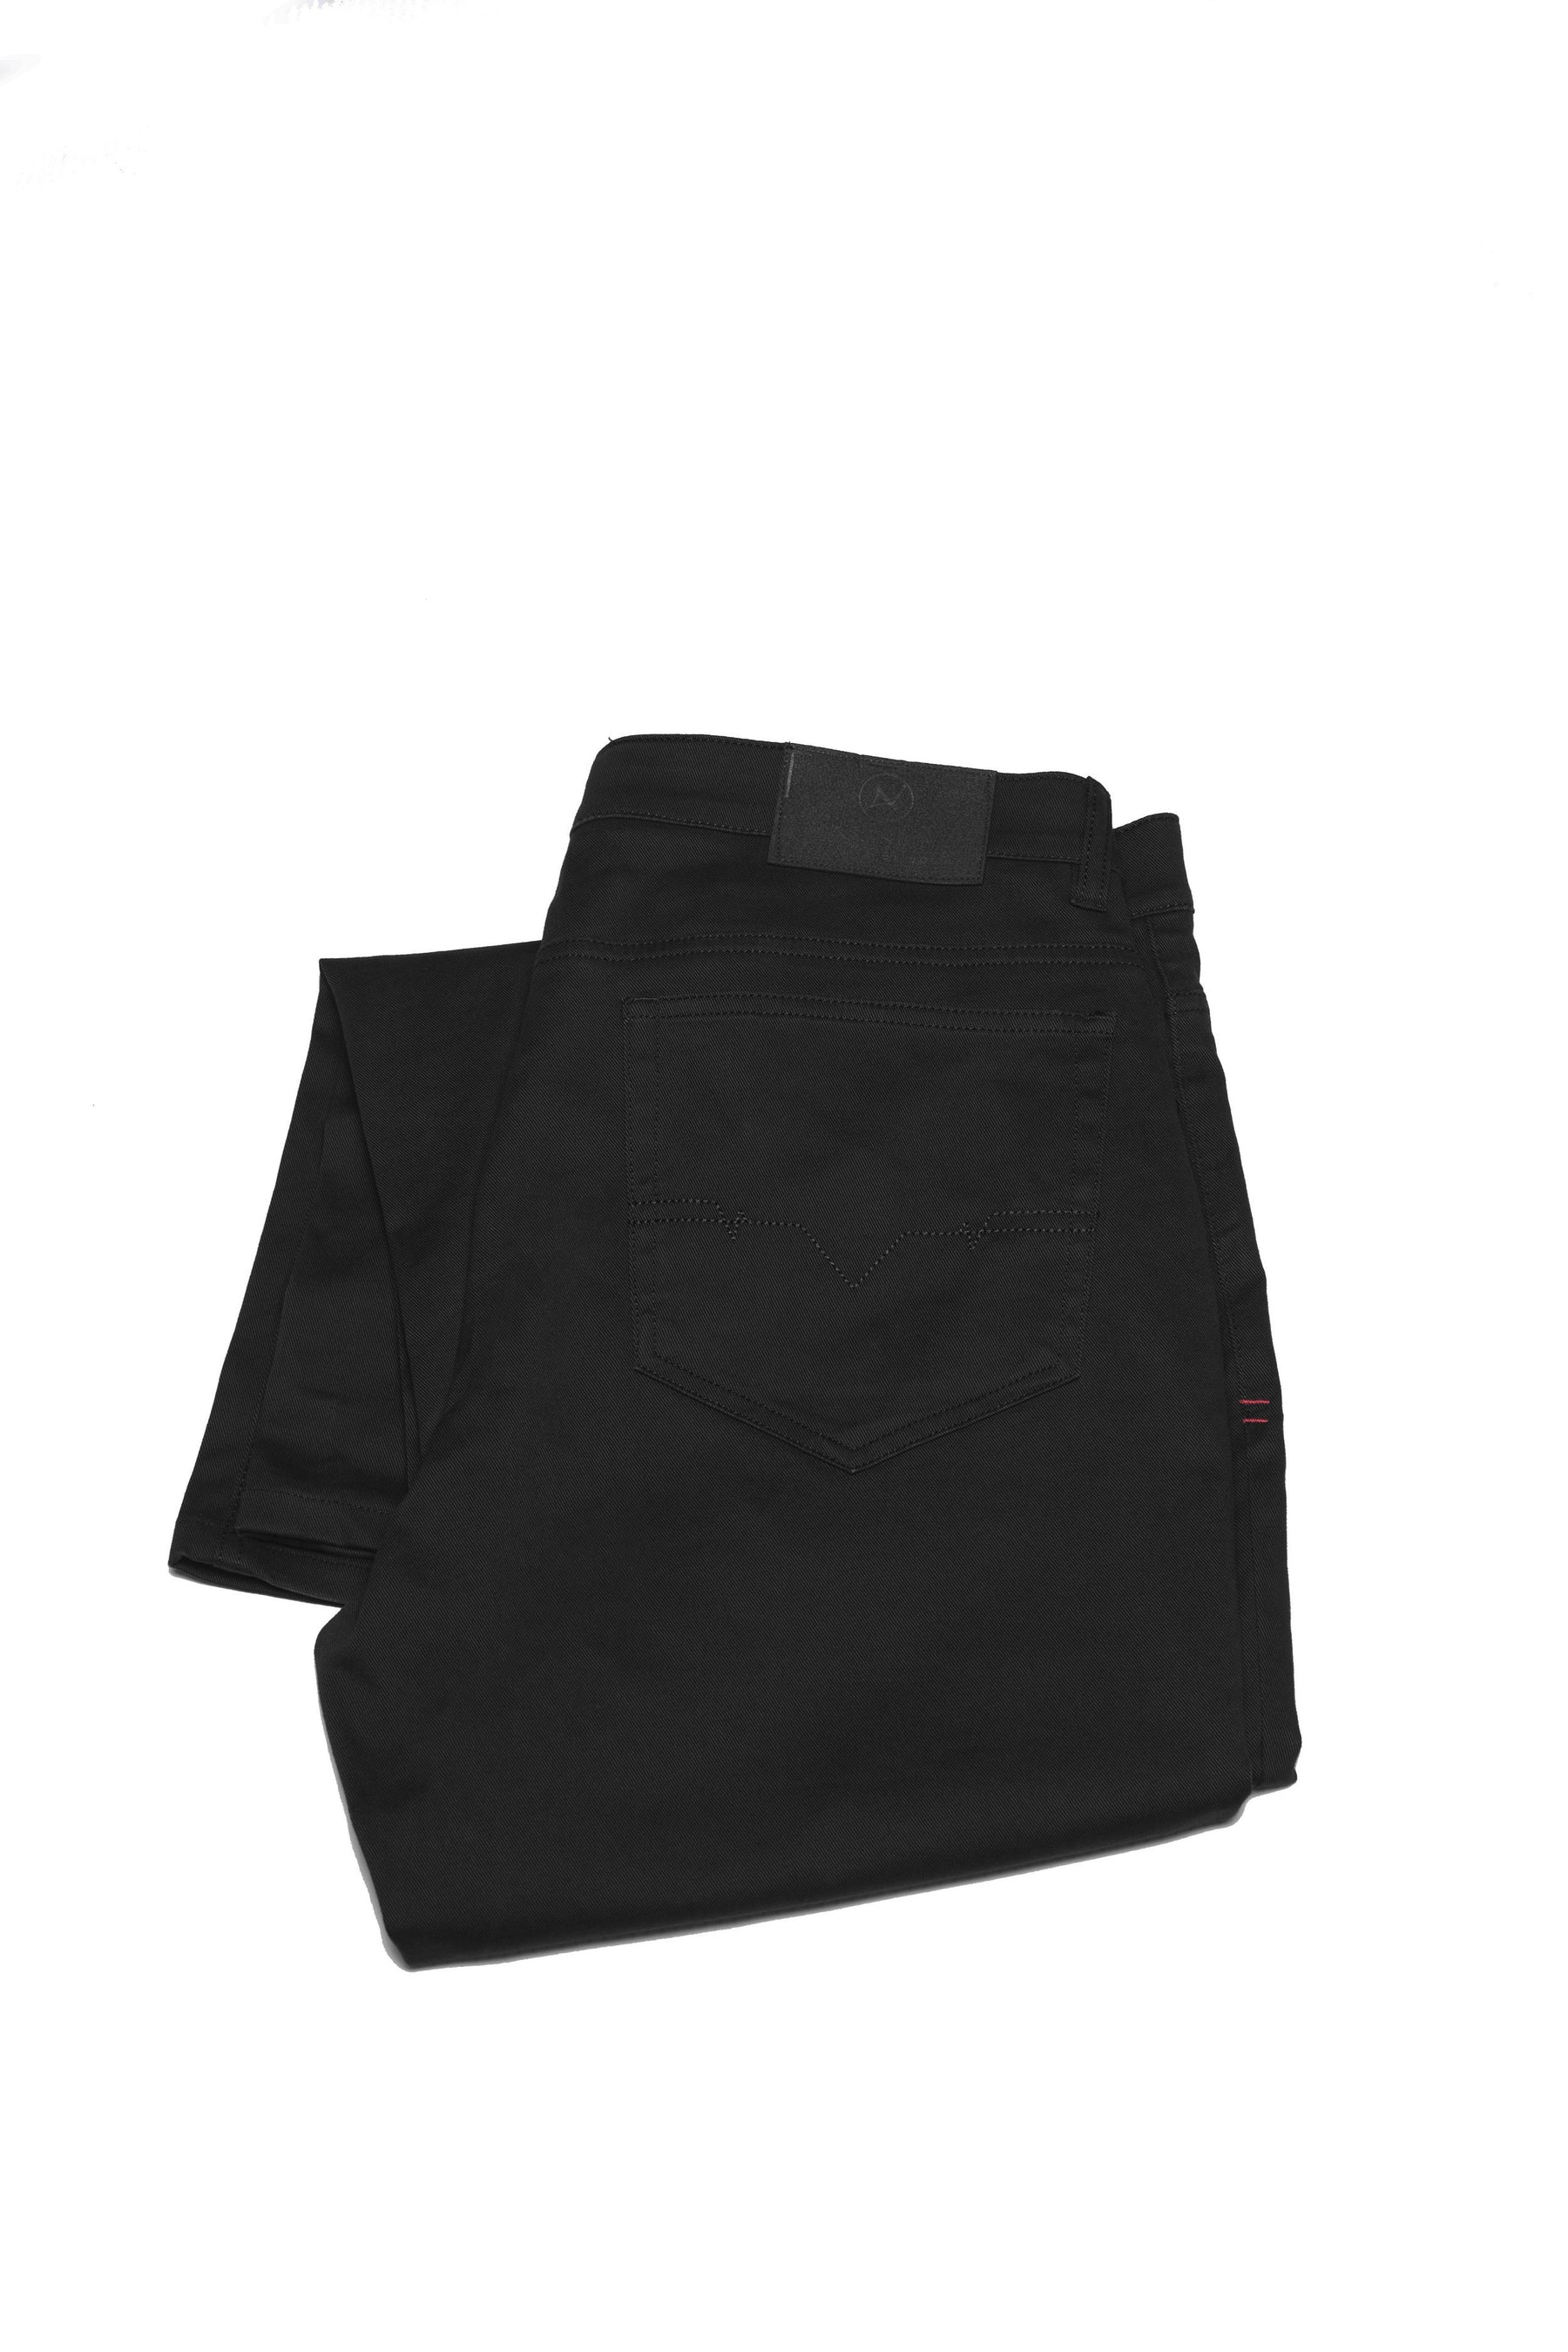 Pantalon Au Noir - SIGNUM black